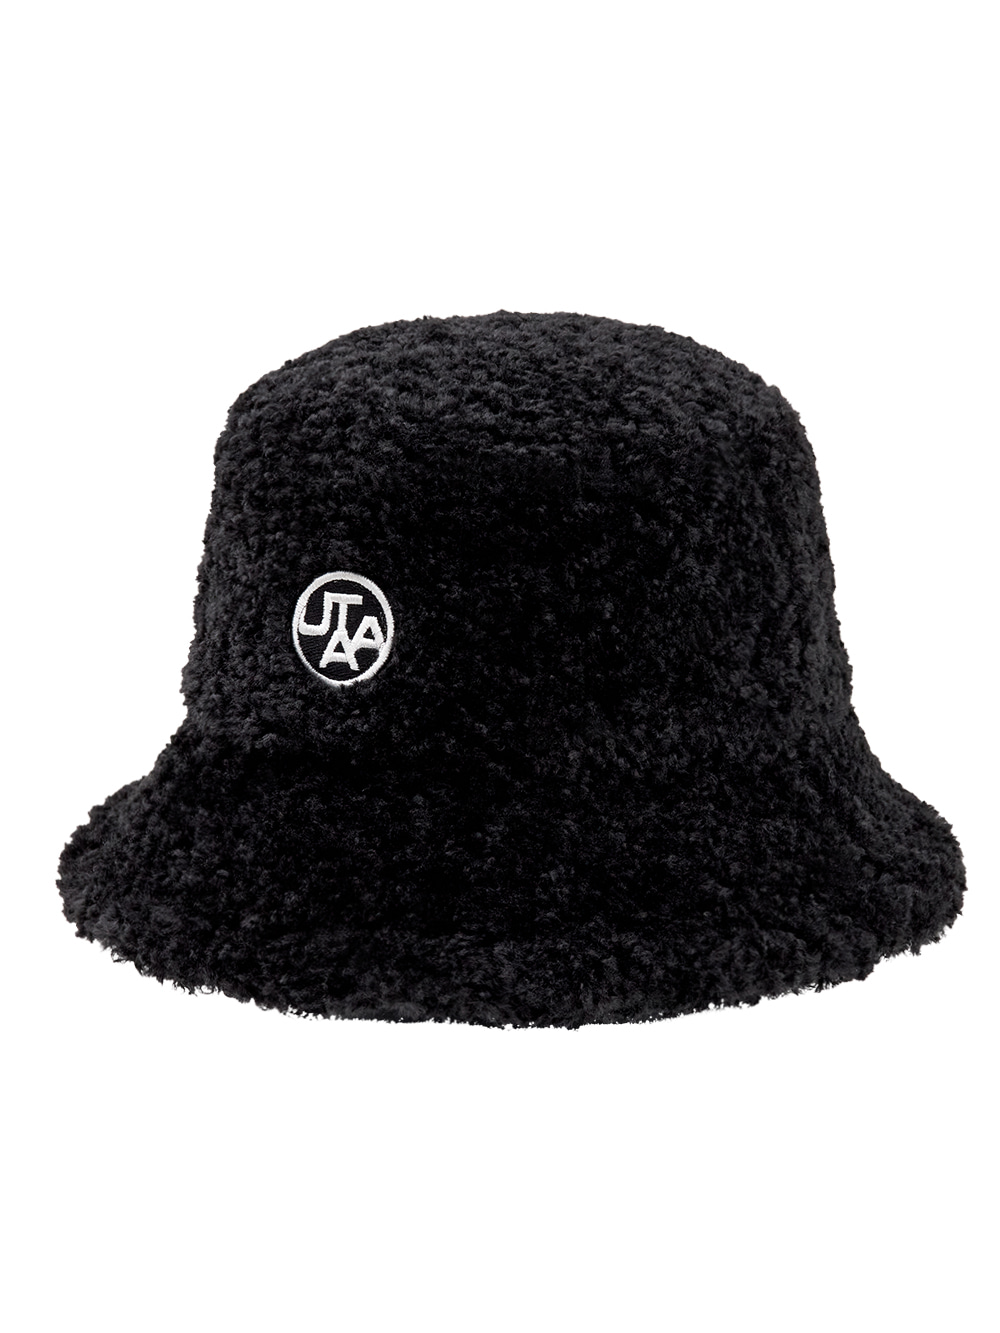 UTAA Emblem Fleece Bucket Hat (UA4GCF745BK)